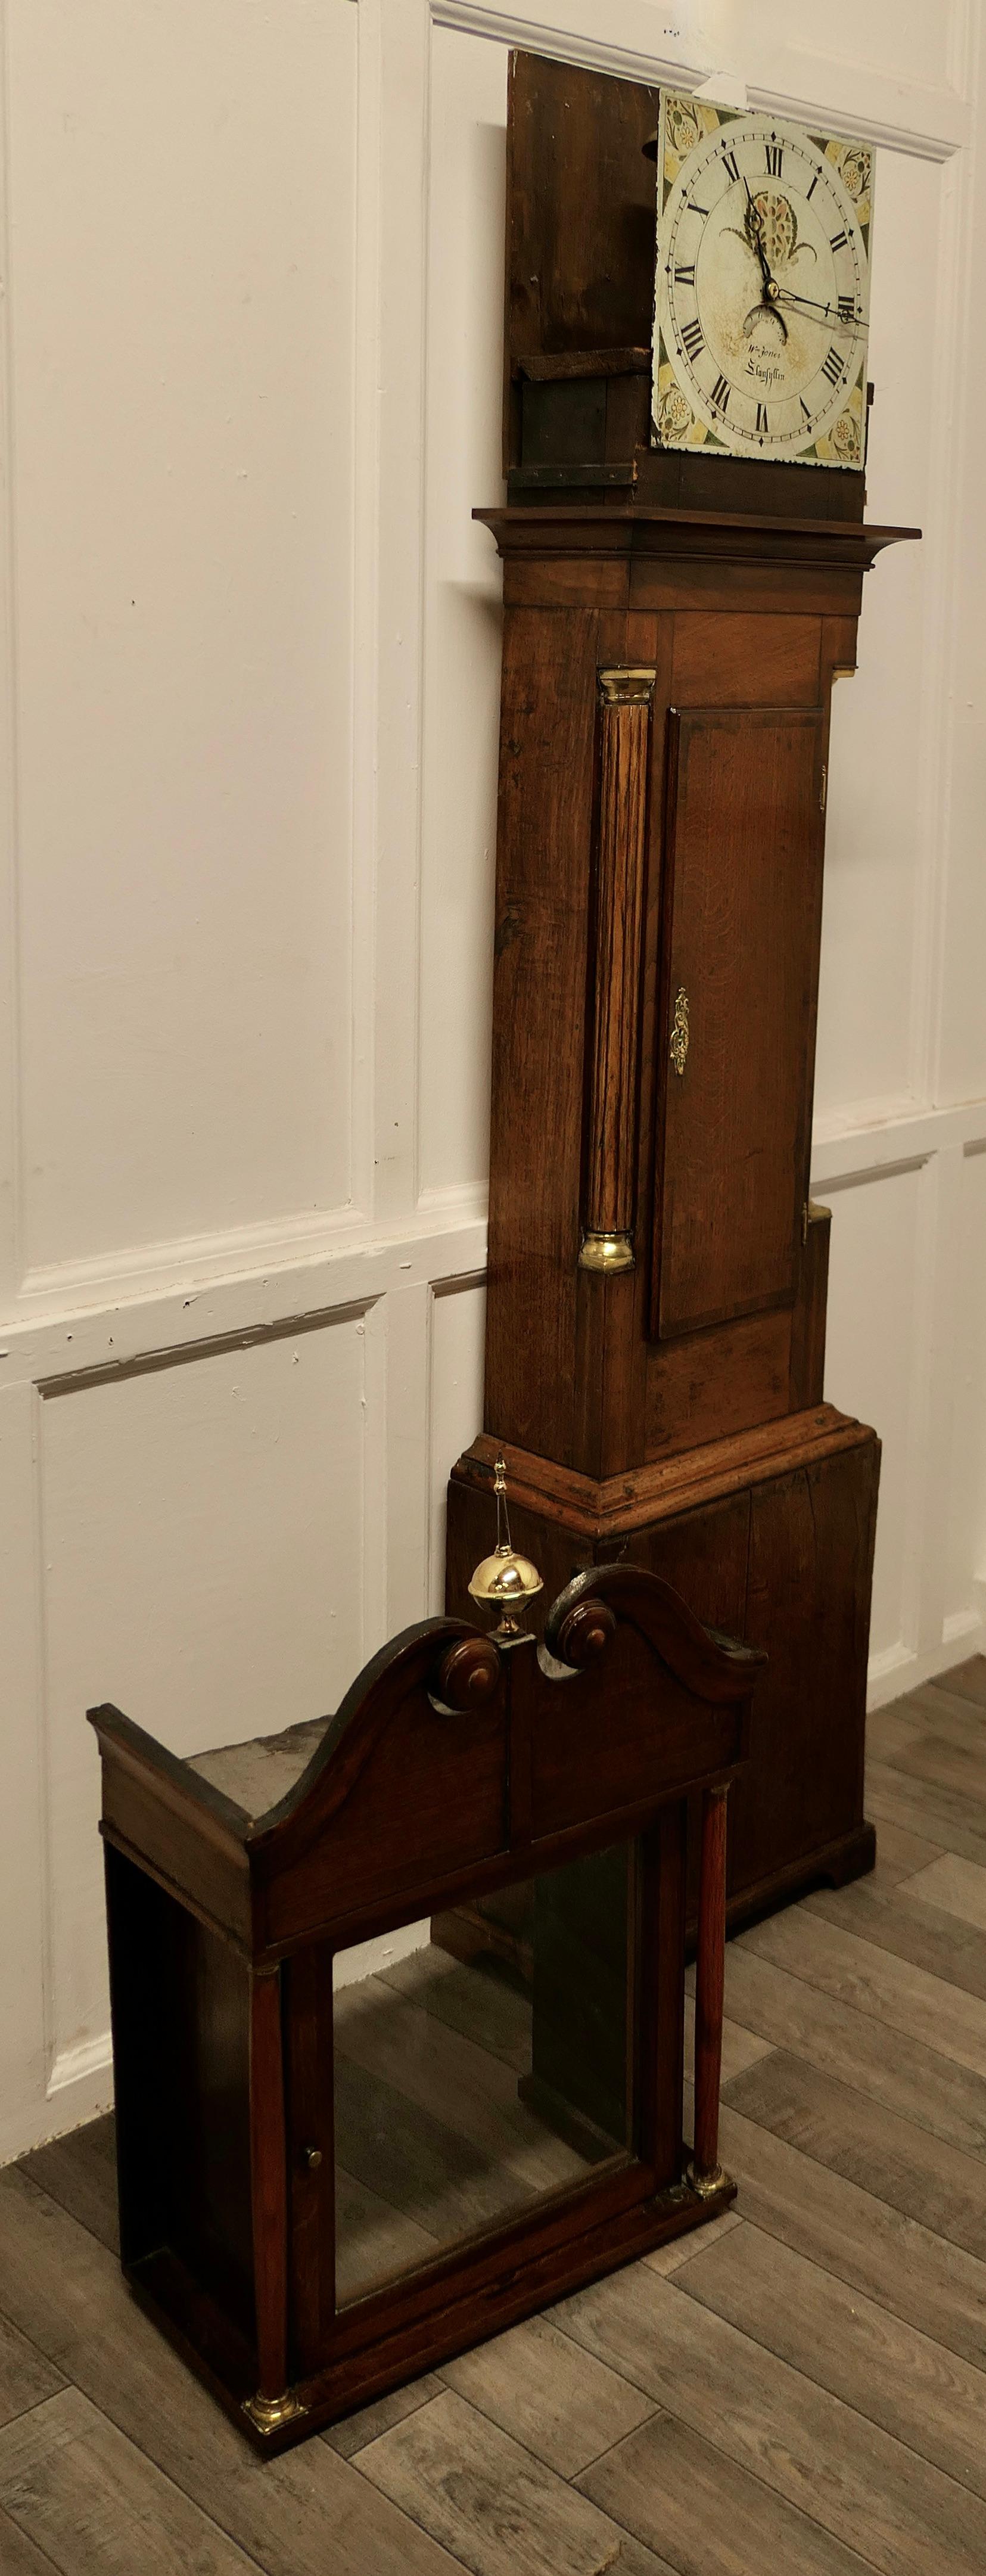 19th Century Welsh Country Oak Long Case Clock by Wm Jones of Llanfyllin For Sale 2